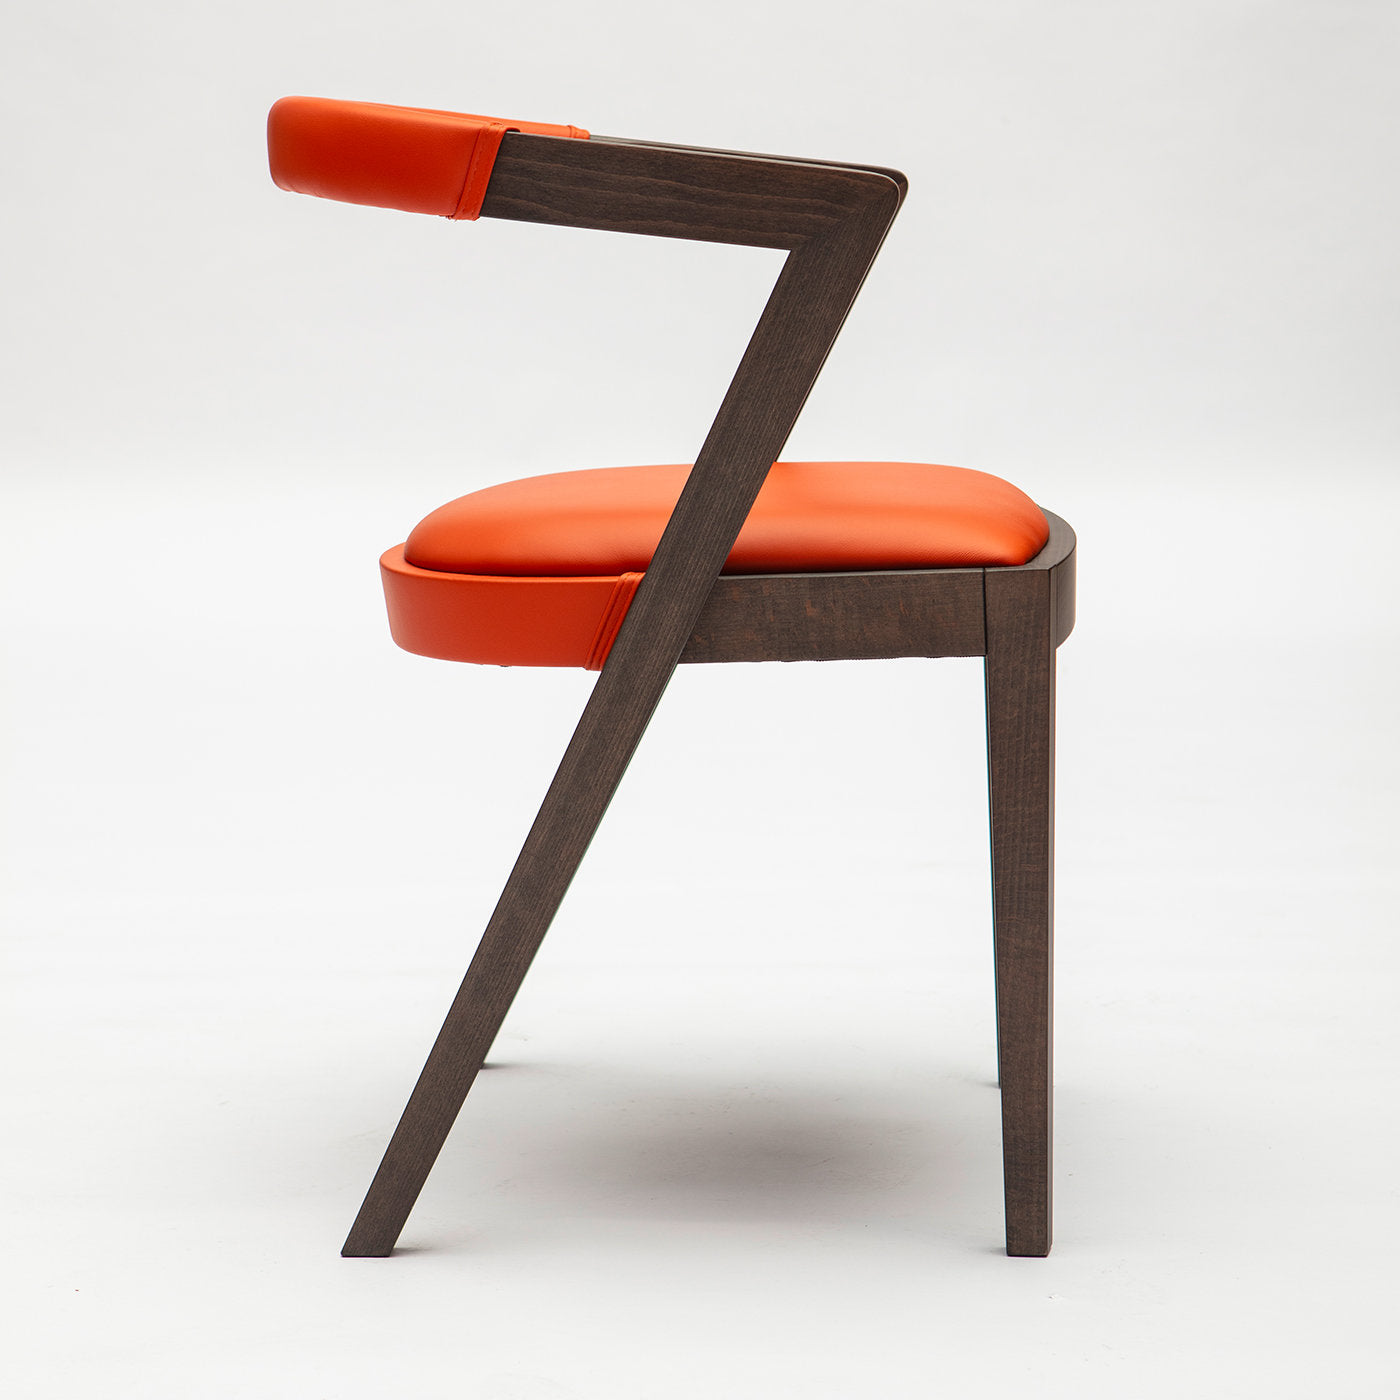 String orange chair - Alternative view 2